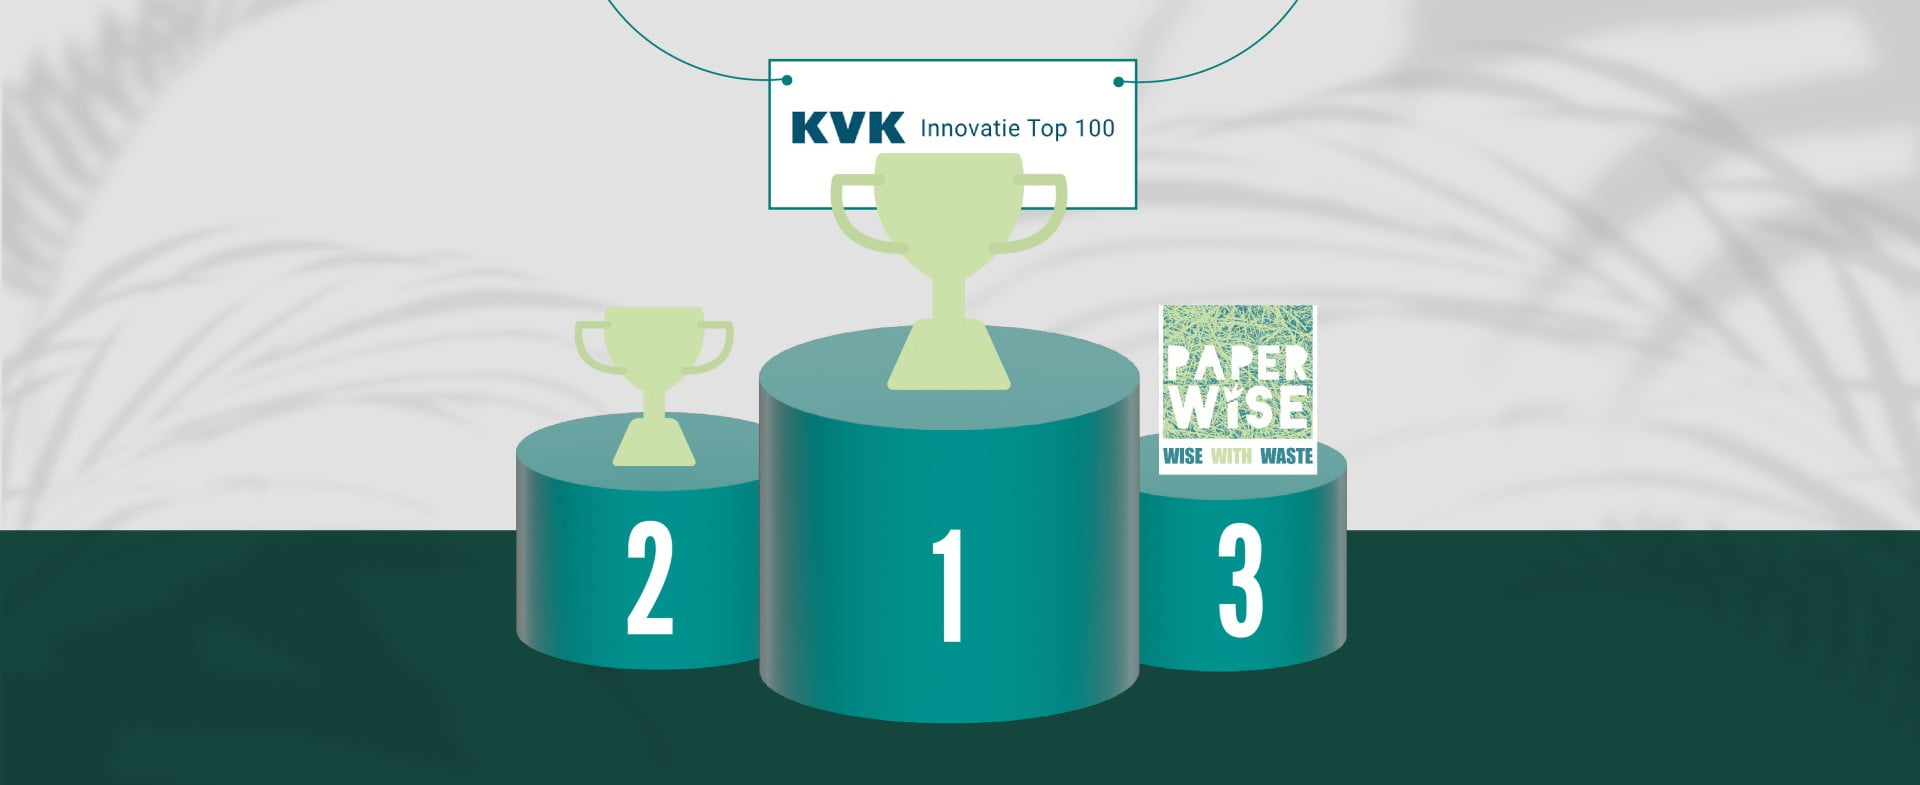 PaperWise indtager tredjepladsen på handelskammerets Top 100 over innovation